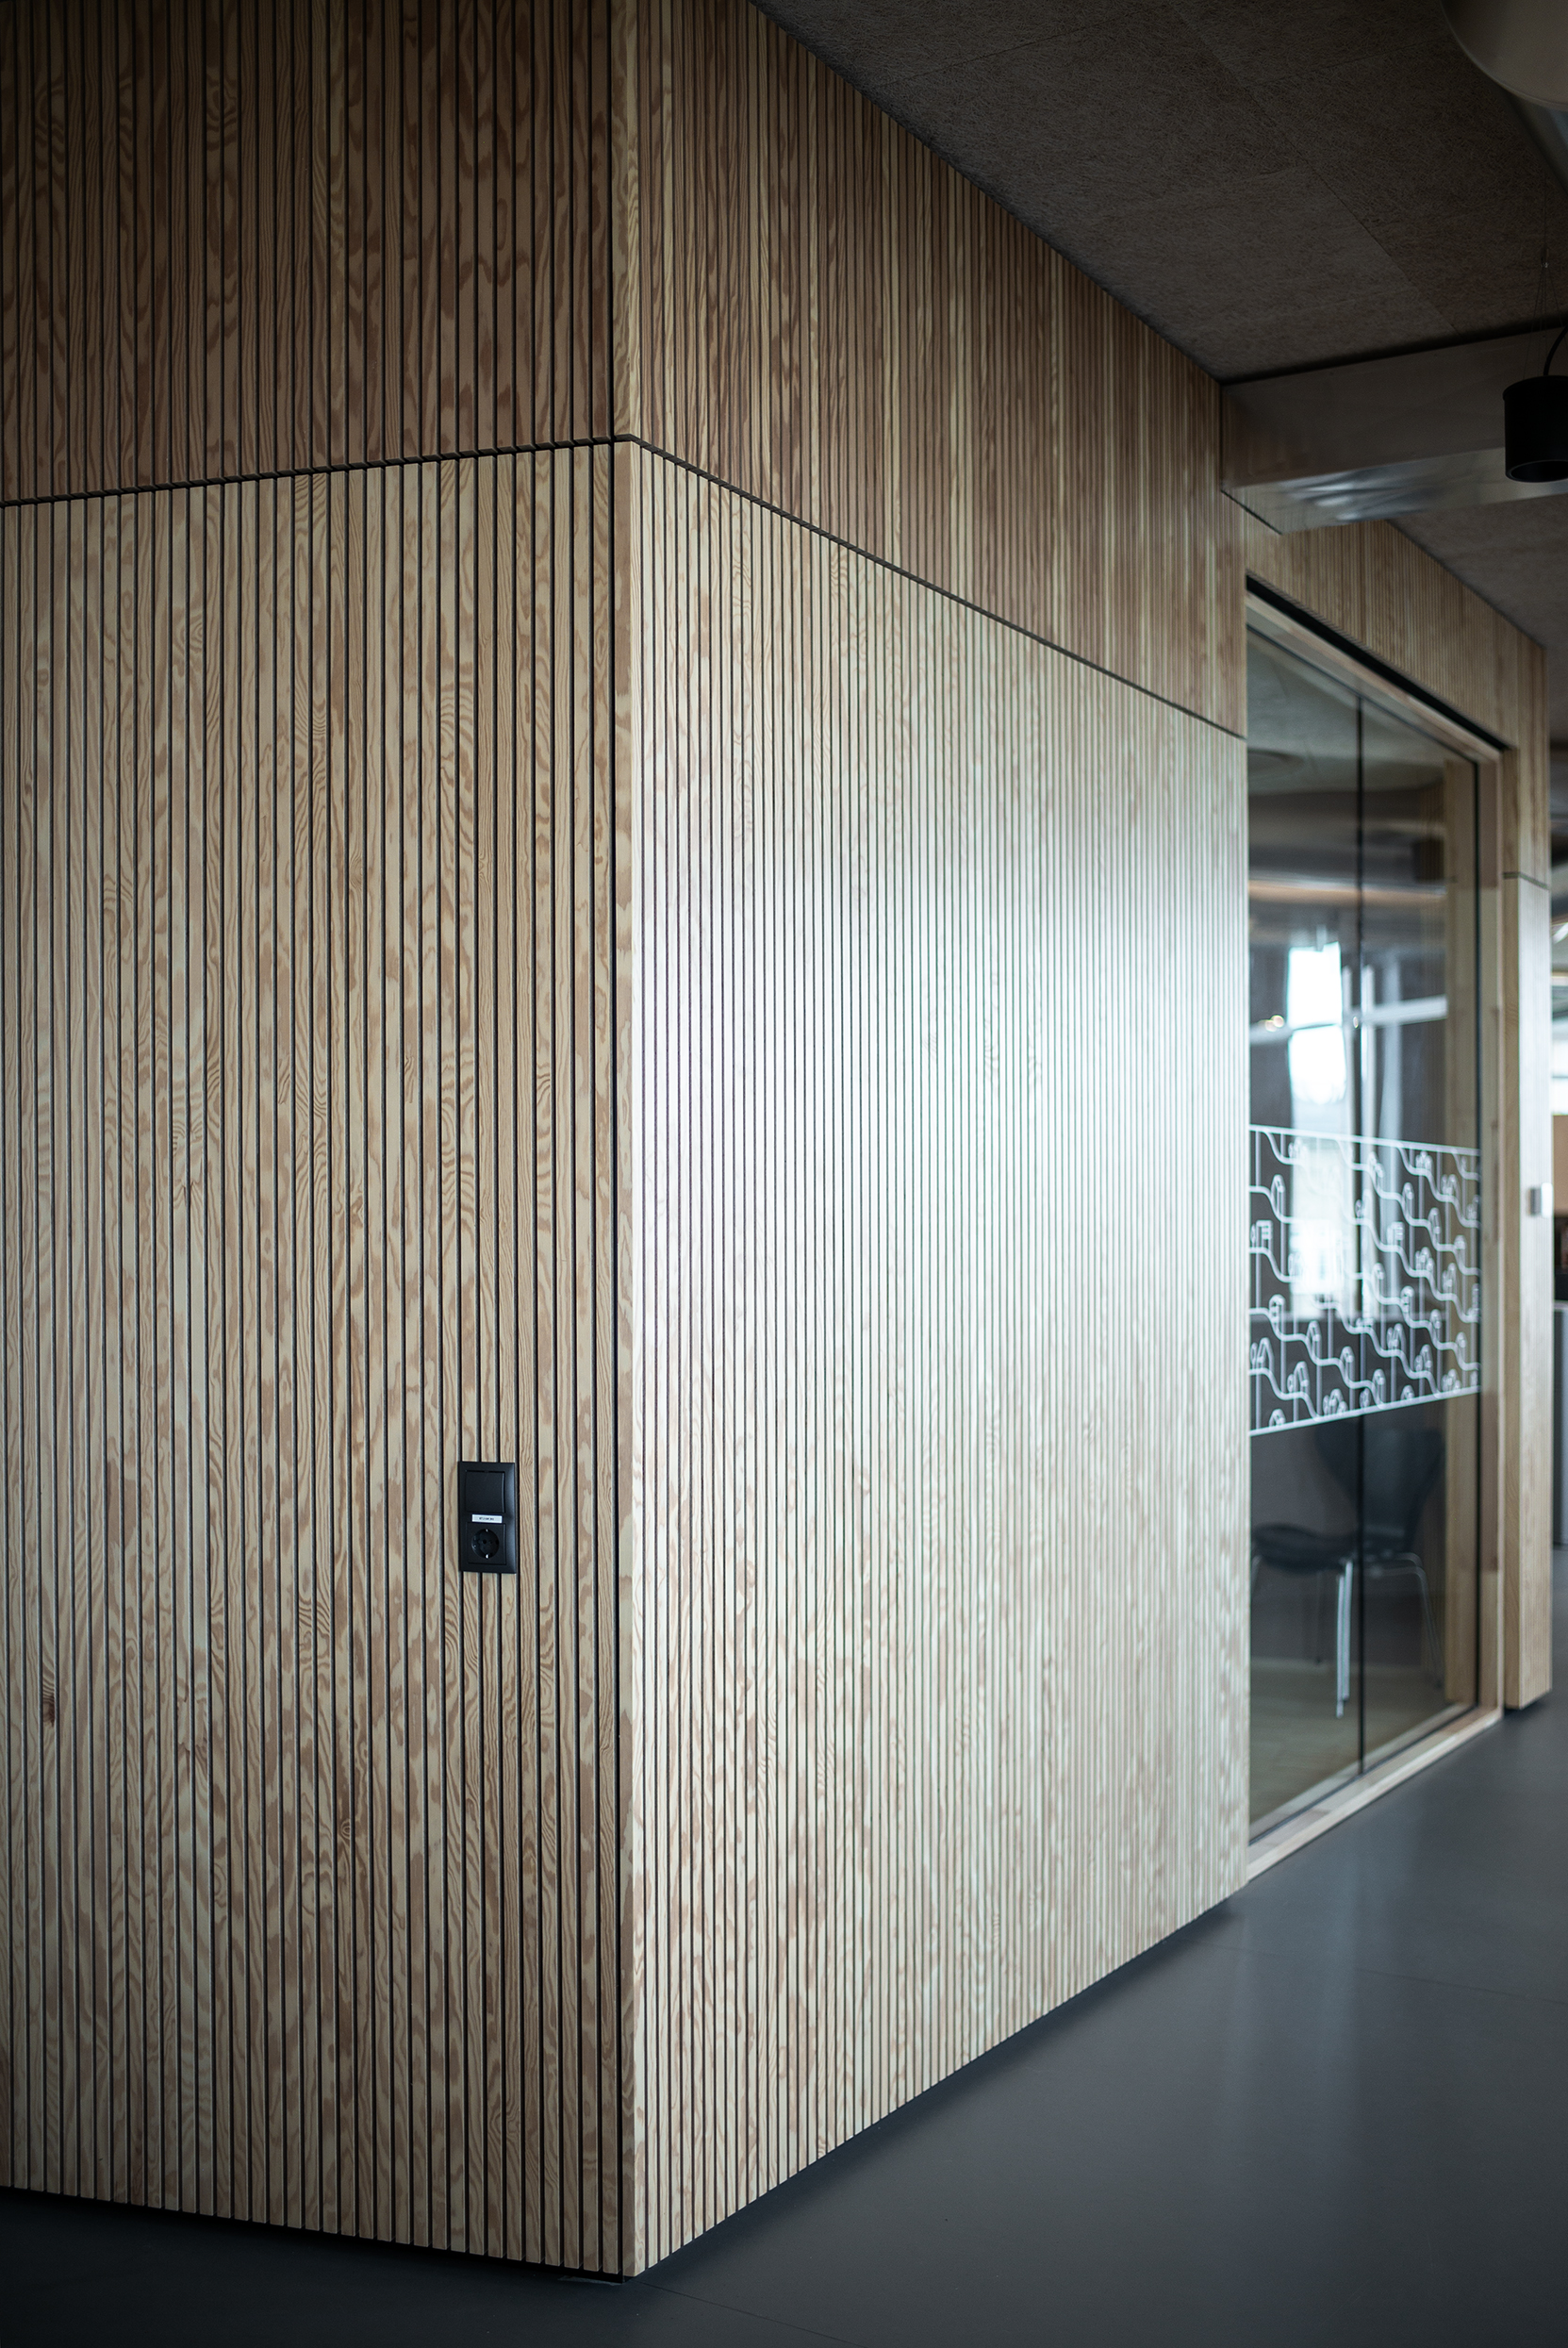 Mødelokaler med træpaneler og transparente vægge